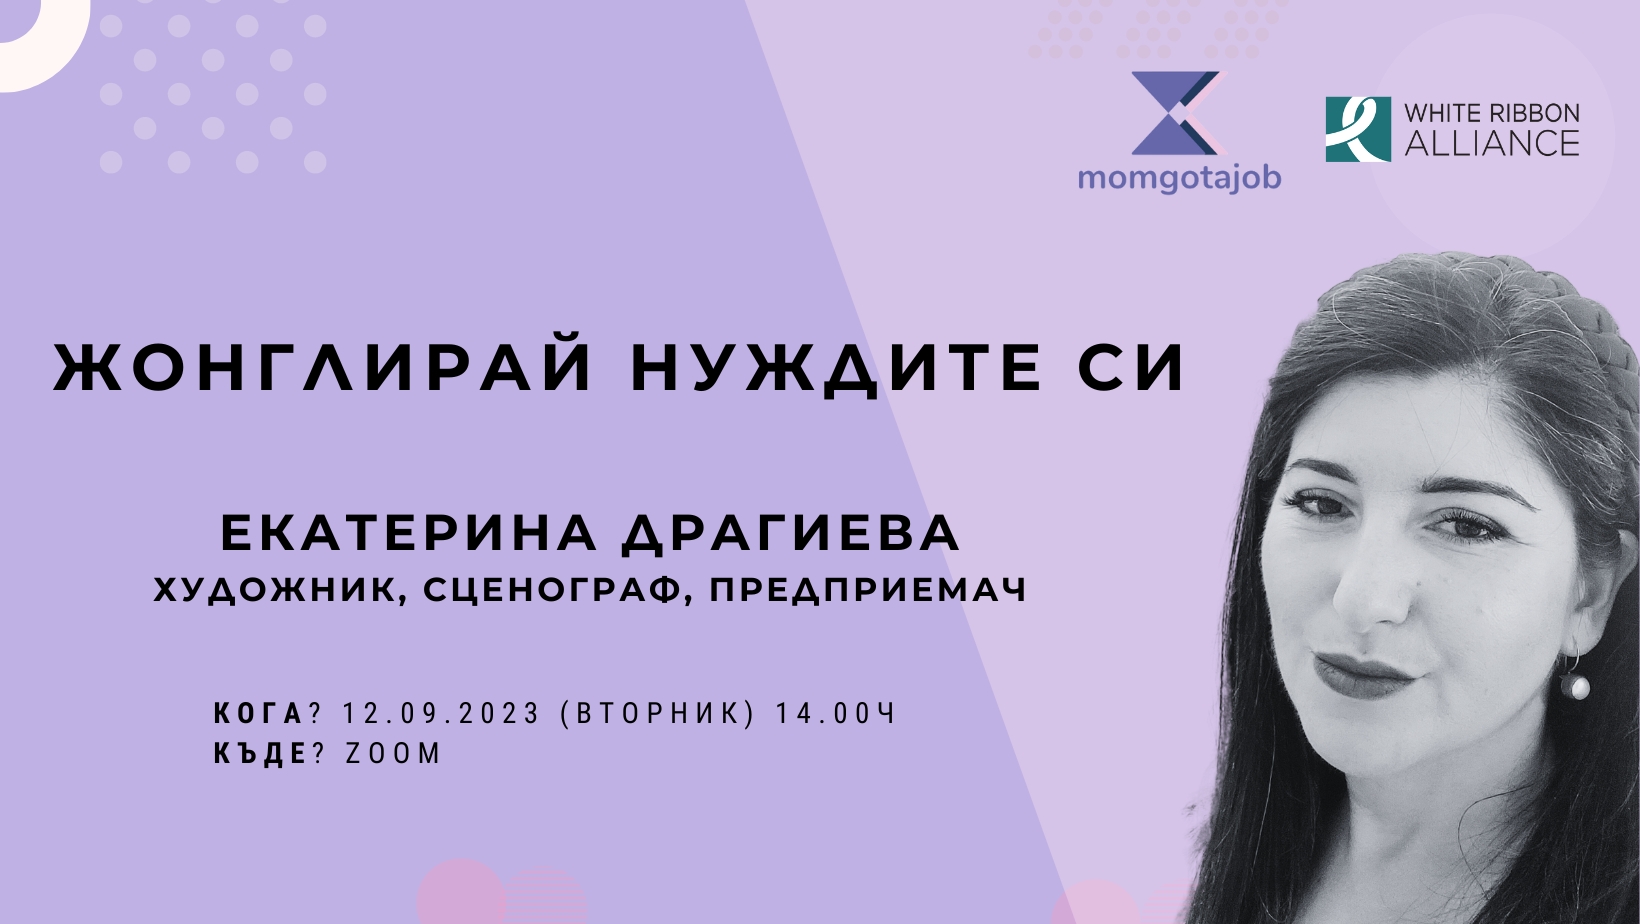 Жонглирай нуждите си - онлайн разговор с Екатерина Драгиева by Momgotajob/Мама има работа